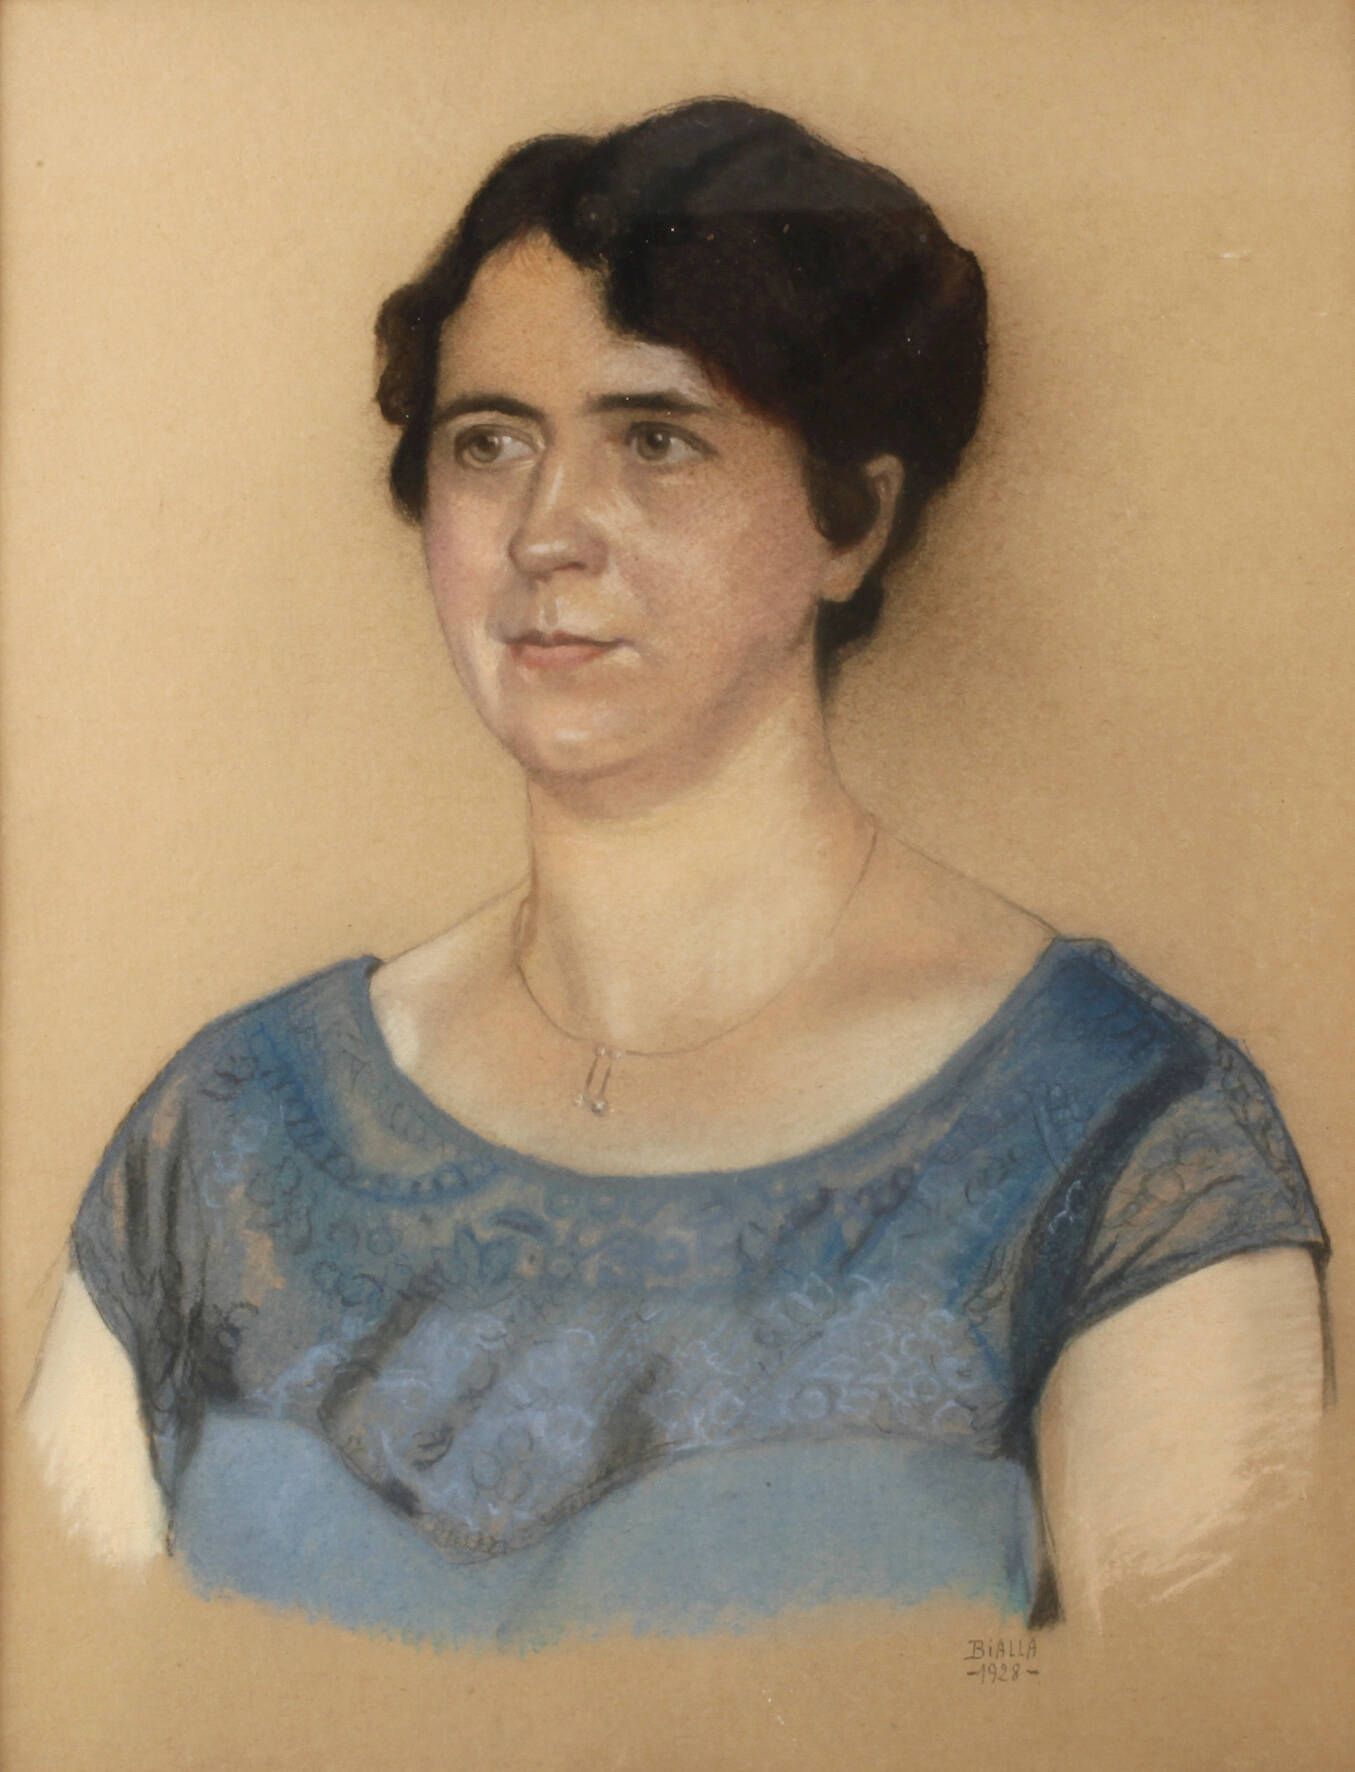 Bialla, Damenportrait